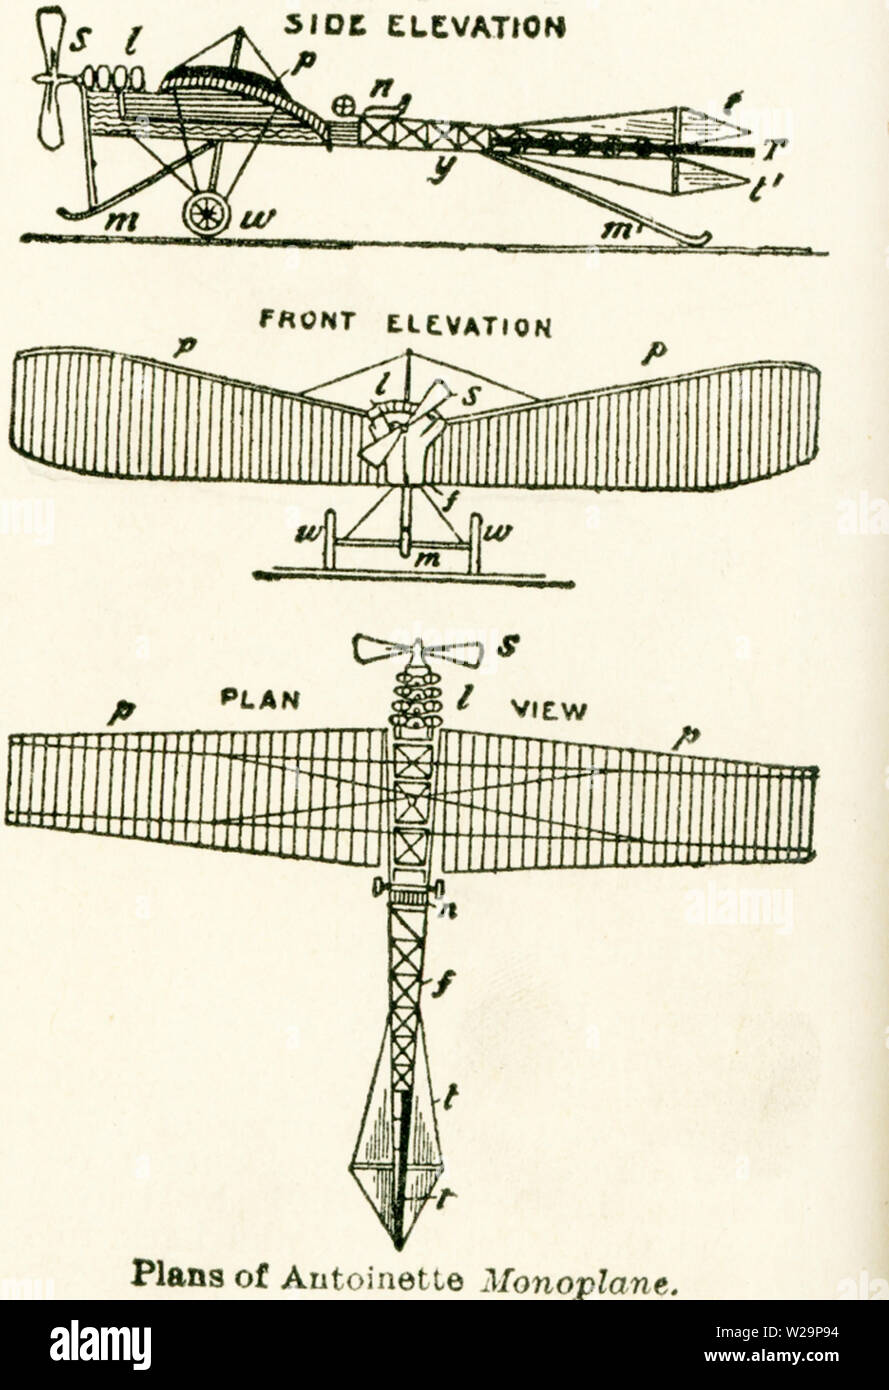 Ce schéma des plans du monoplan Antoinette date au début des années 1920. Dans les premières années de machines volantes, il y avait deux types : l'un biplan qui était composé de deux avions bien connecté (le type de l'Wright borthers' machine) et l'unique avion monoplan ou de vol qui a été utilisé par Jean Blériot traverse la Manche en 1909. Le premier vol du monoplan en 1911. Il a été construit en France et était un avion militaire. Montré ici sont l'élévation latérale, l'élévation avant, et vue en plan (regardant la machine à partir du haut). Banque D'Images